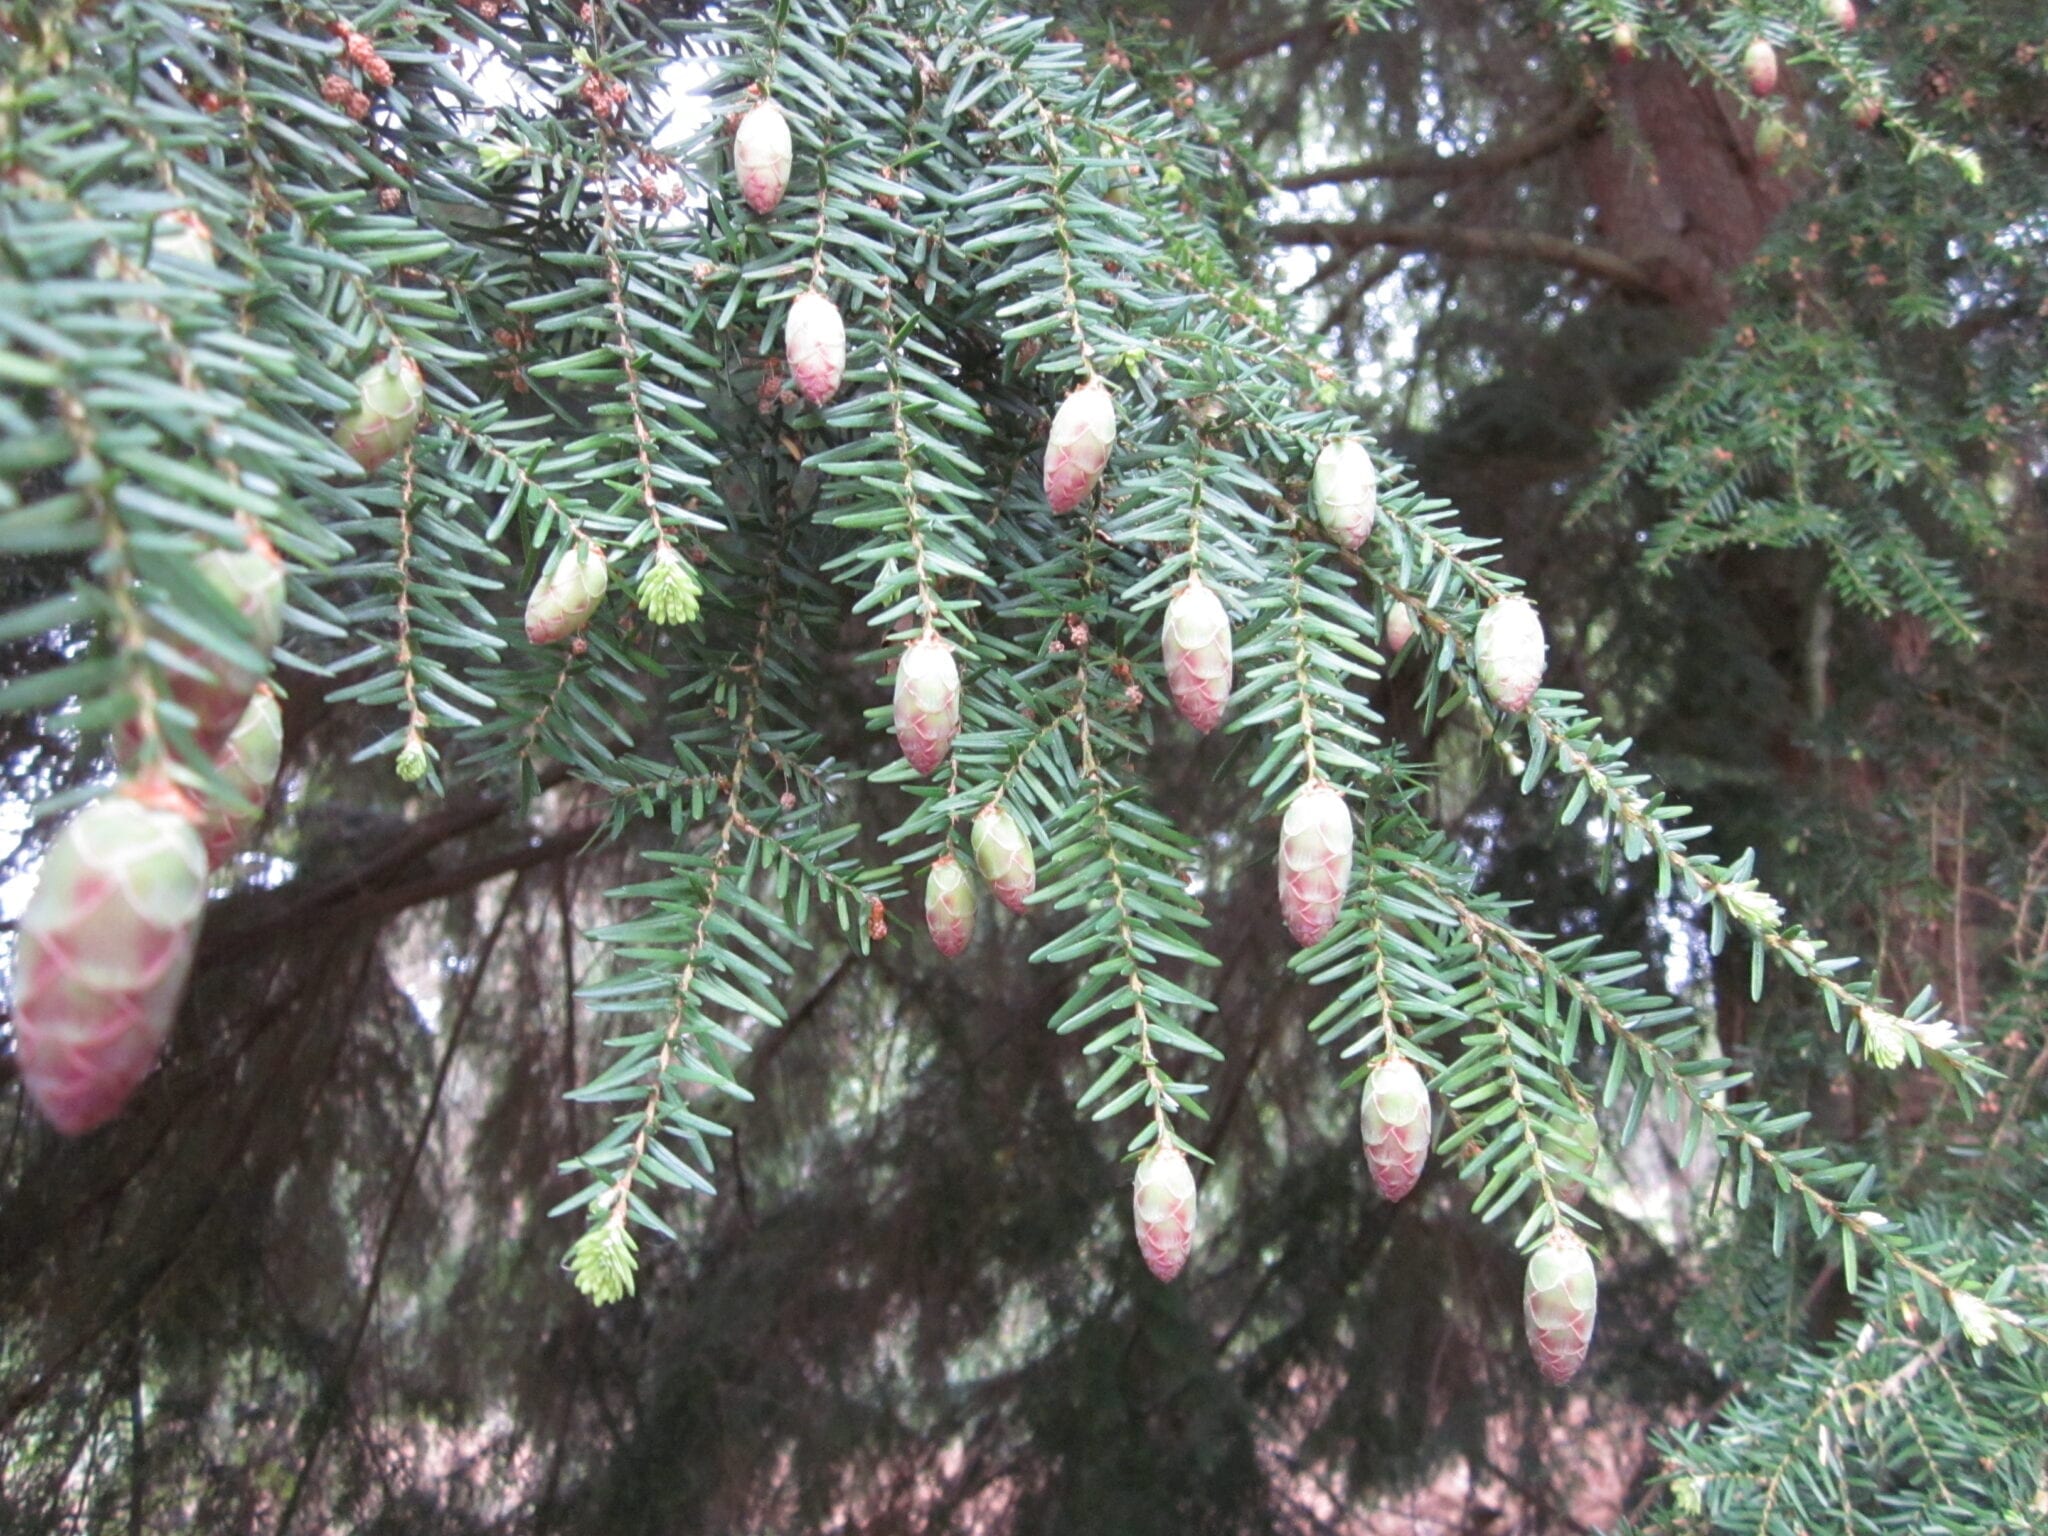 Western Hemlock cones